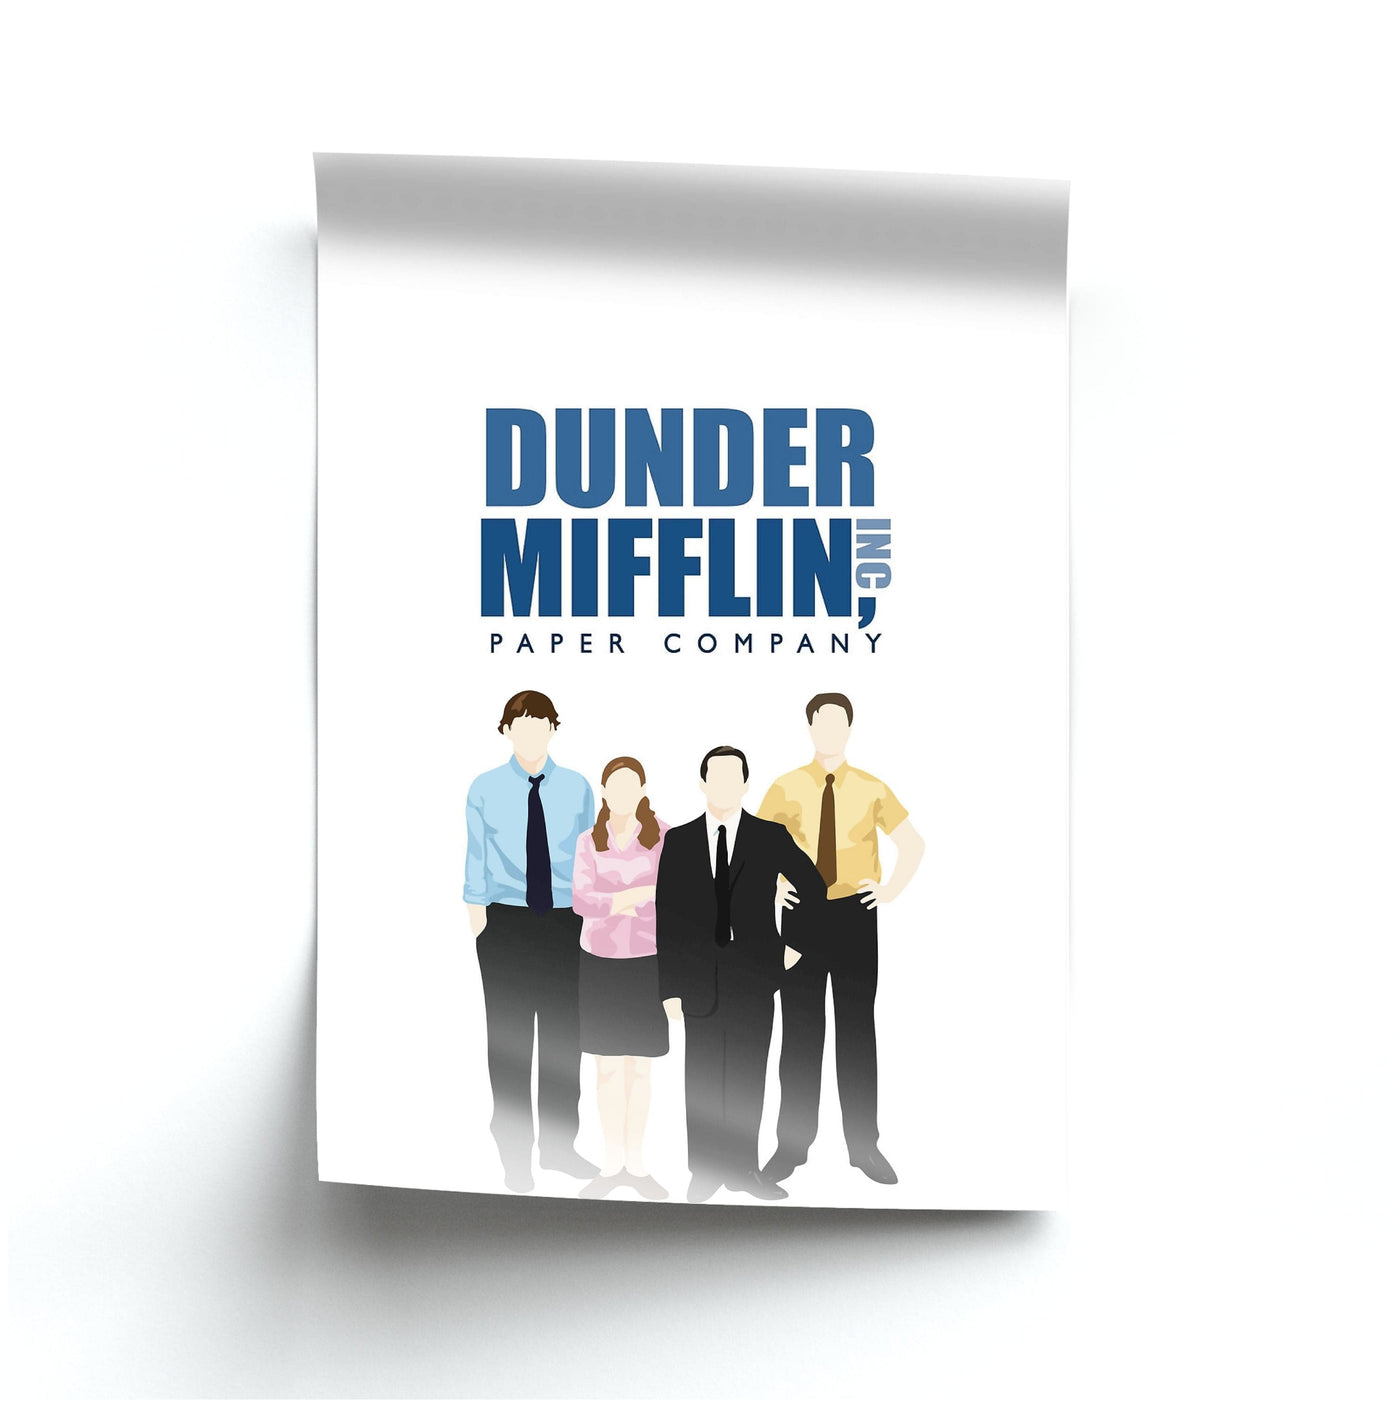 The Office Cartoon - Dunder Mifflin Poster